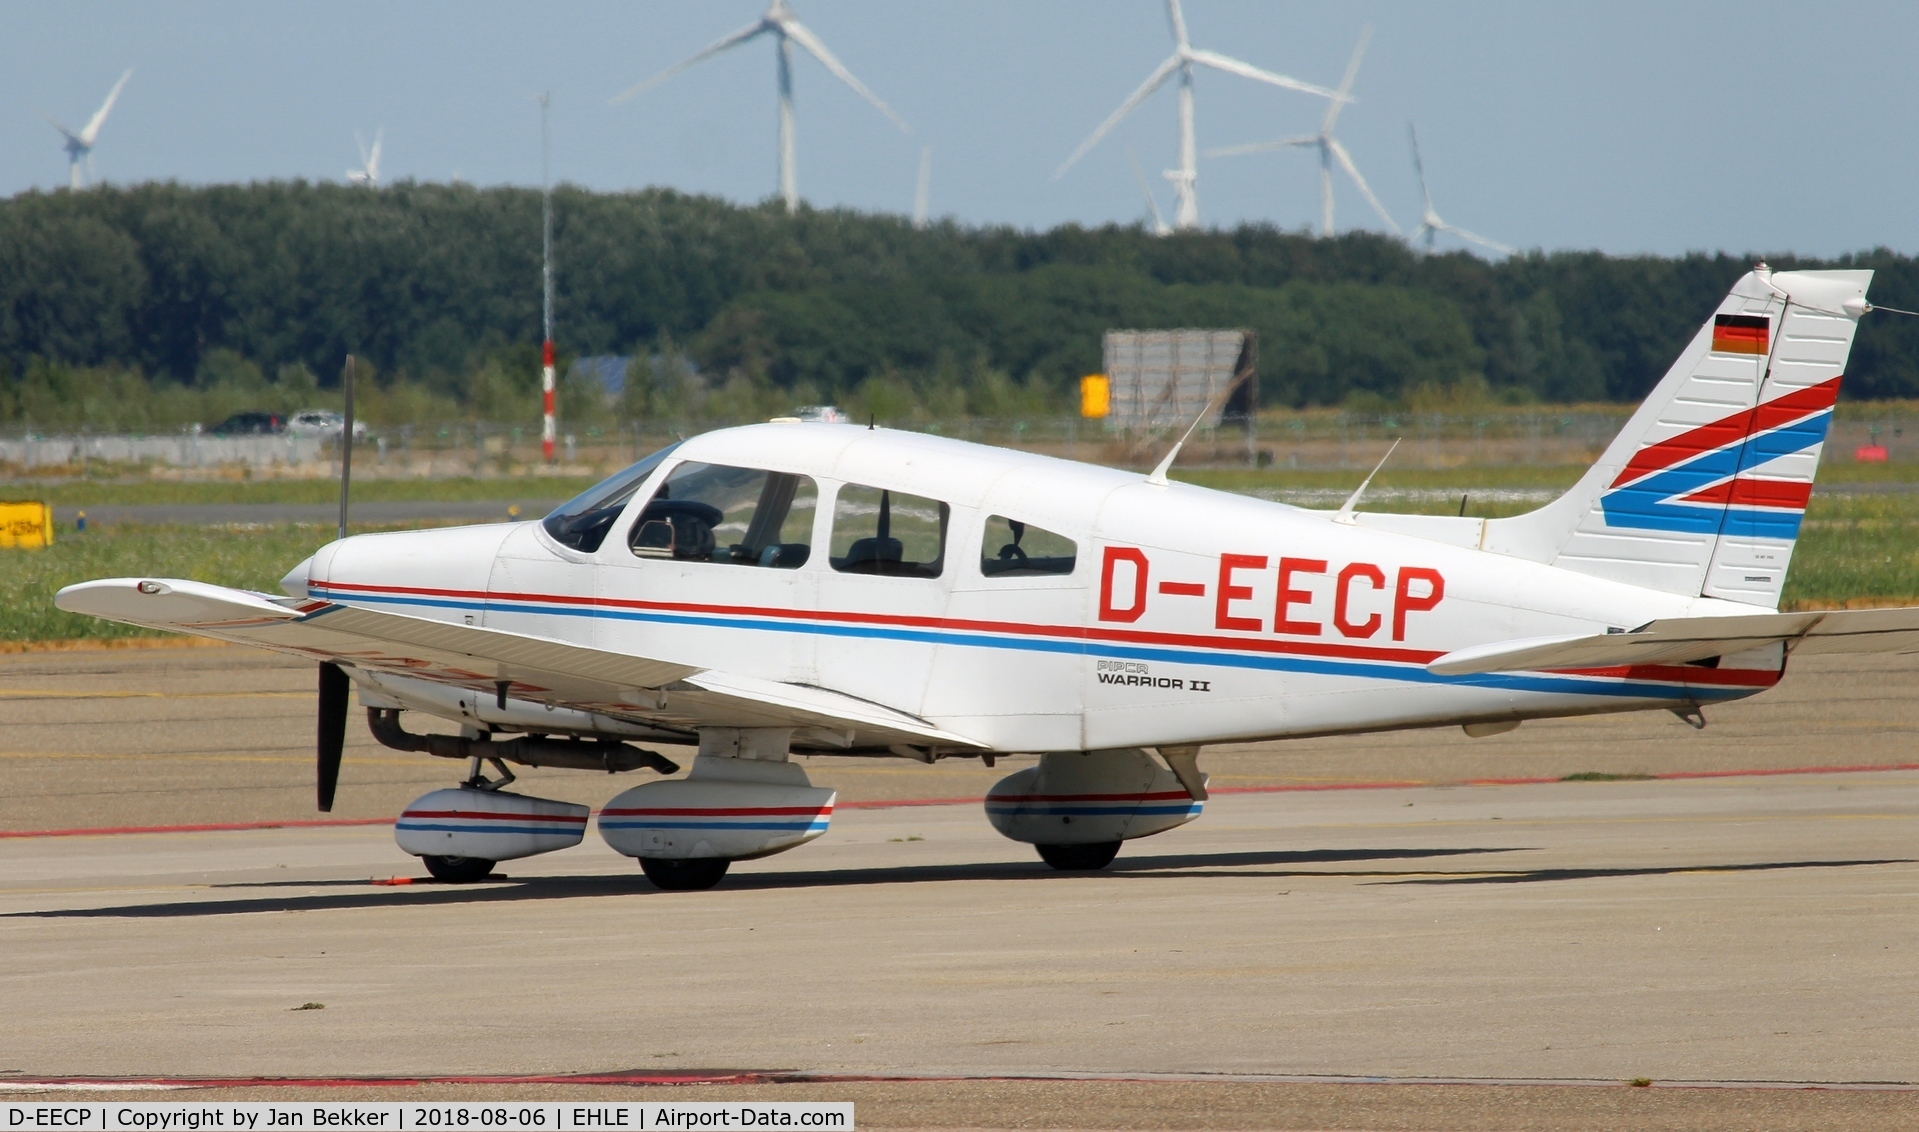 D-EECP, 1981 Piper PA-28-161 Warrior II C/N 28-8116242, Lelystad Airport